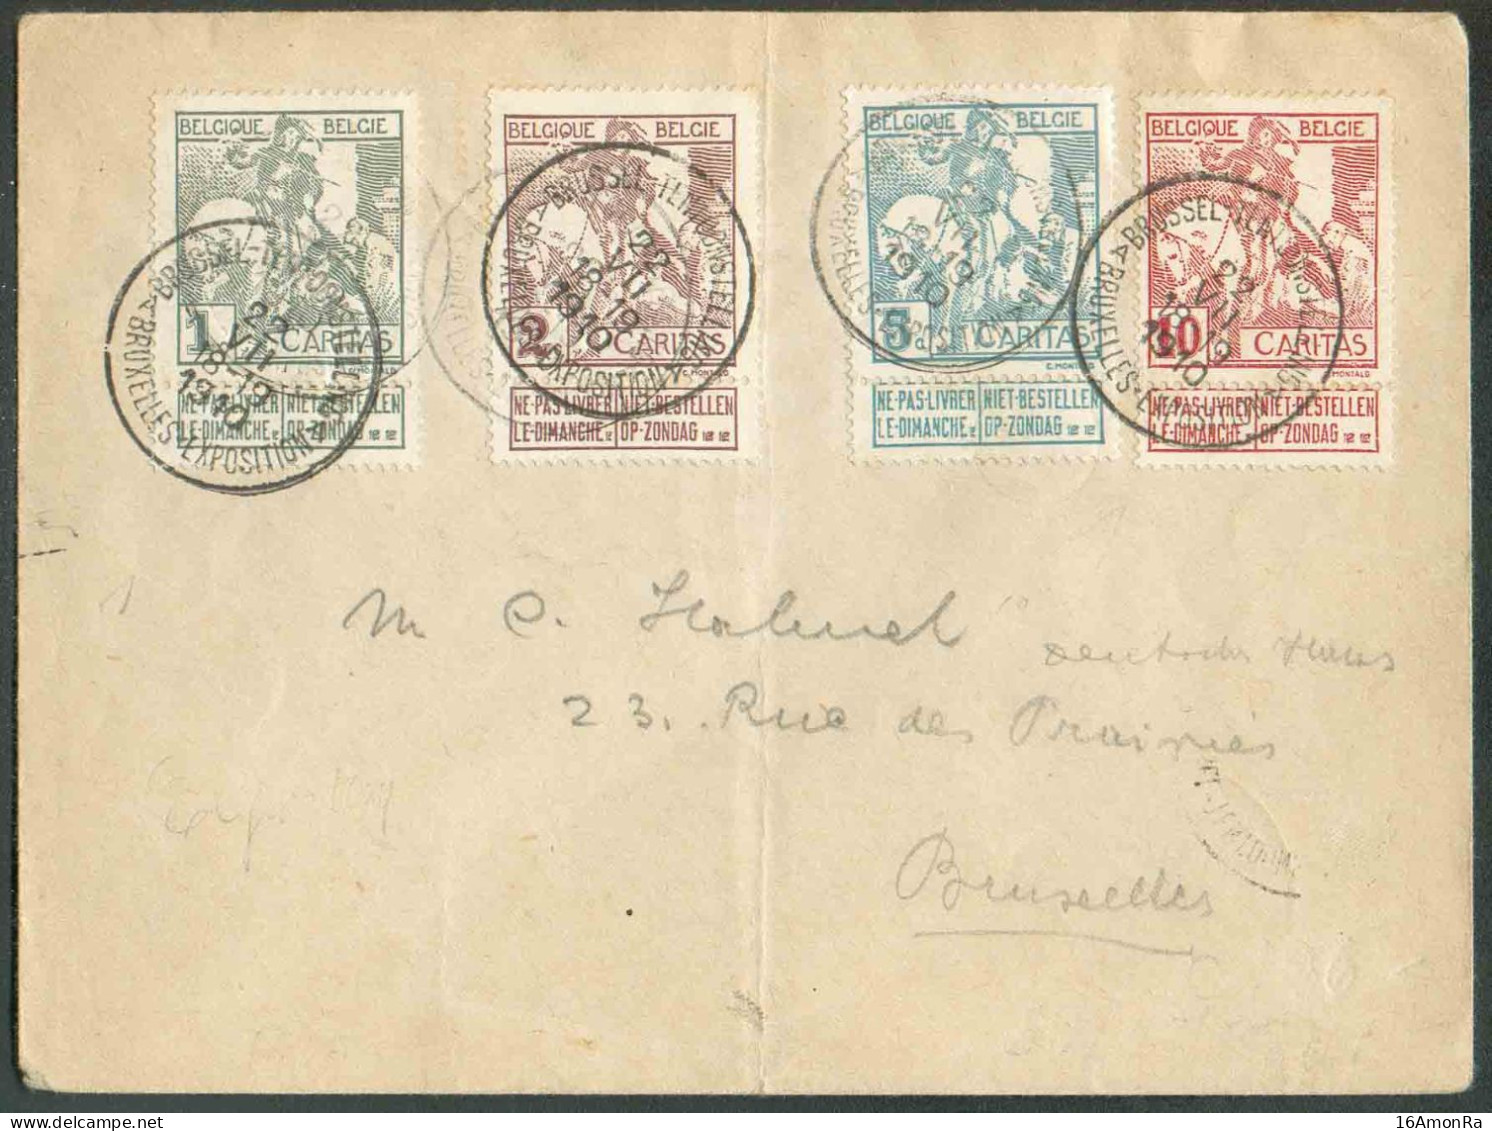 N°84/87 - Série CARITAS 1911 MONTALD Obl. Sc BRUXELLES-EXPOSITION/A S/L. Du 22-VII-1910 Vers La Ville. Verso : Annulatio - 1910-1911 Caritas